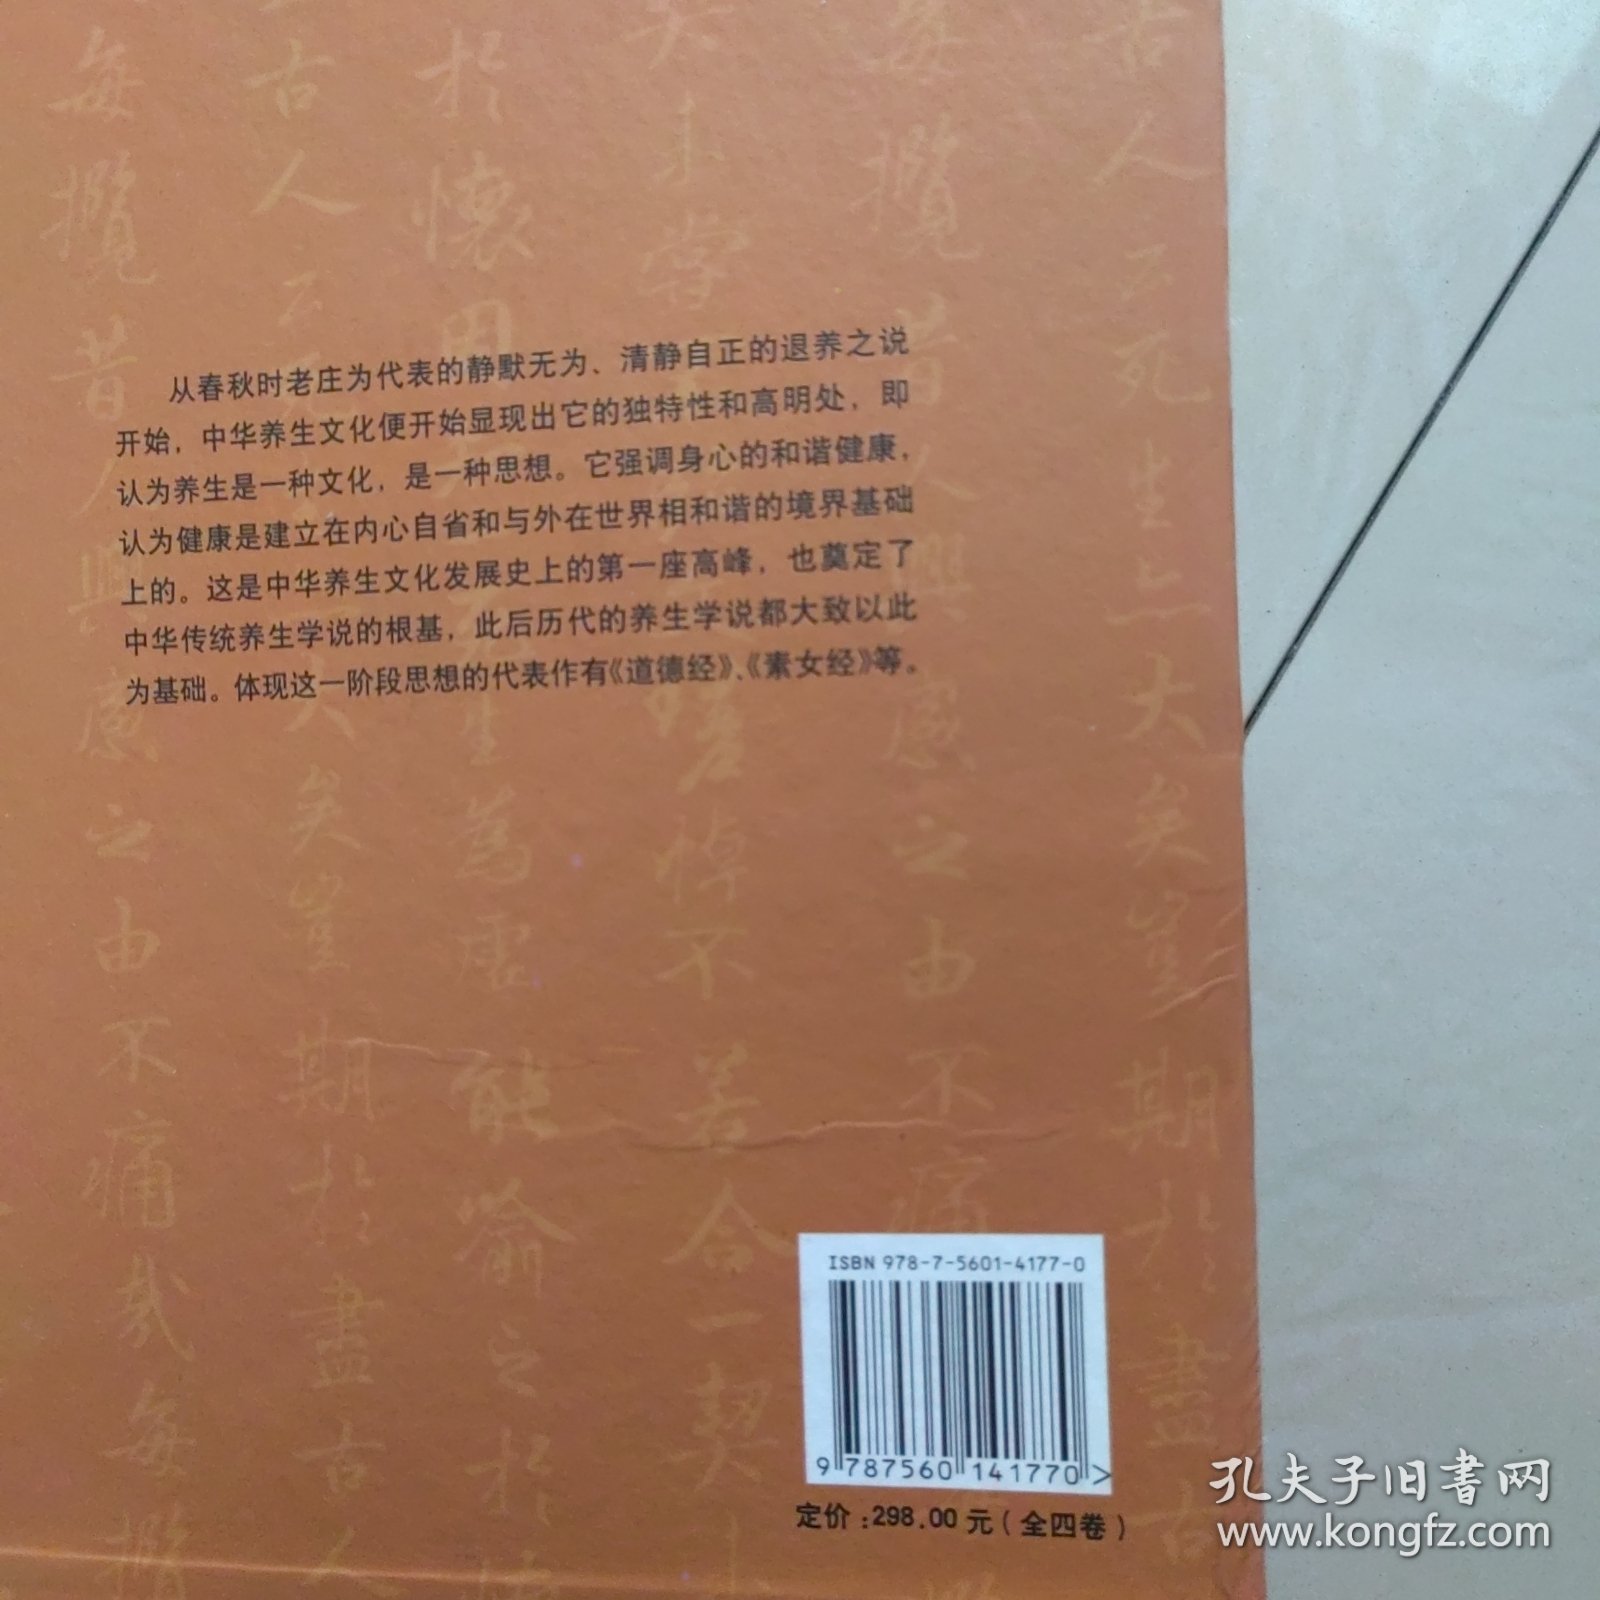 中华养生百科（全4卷）